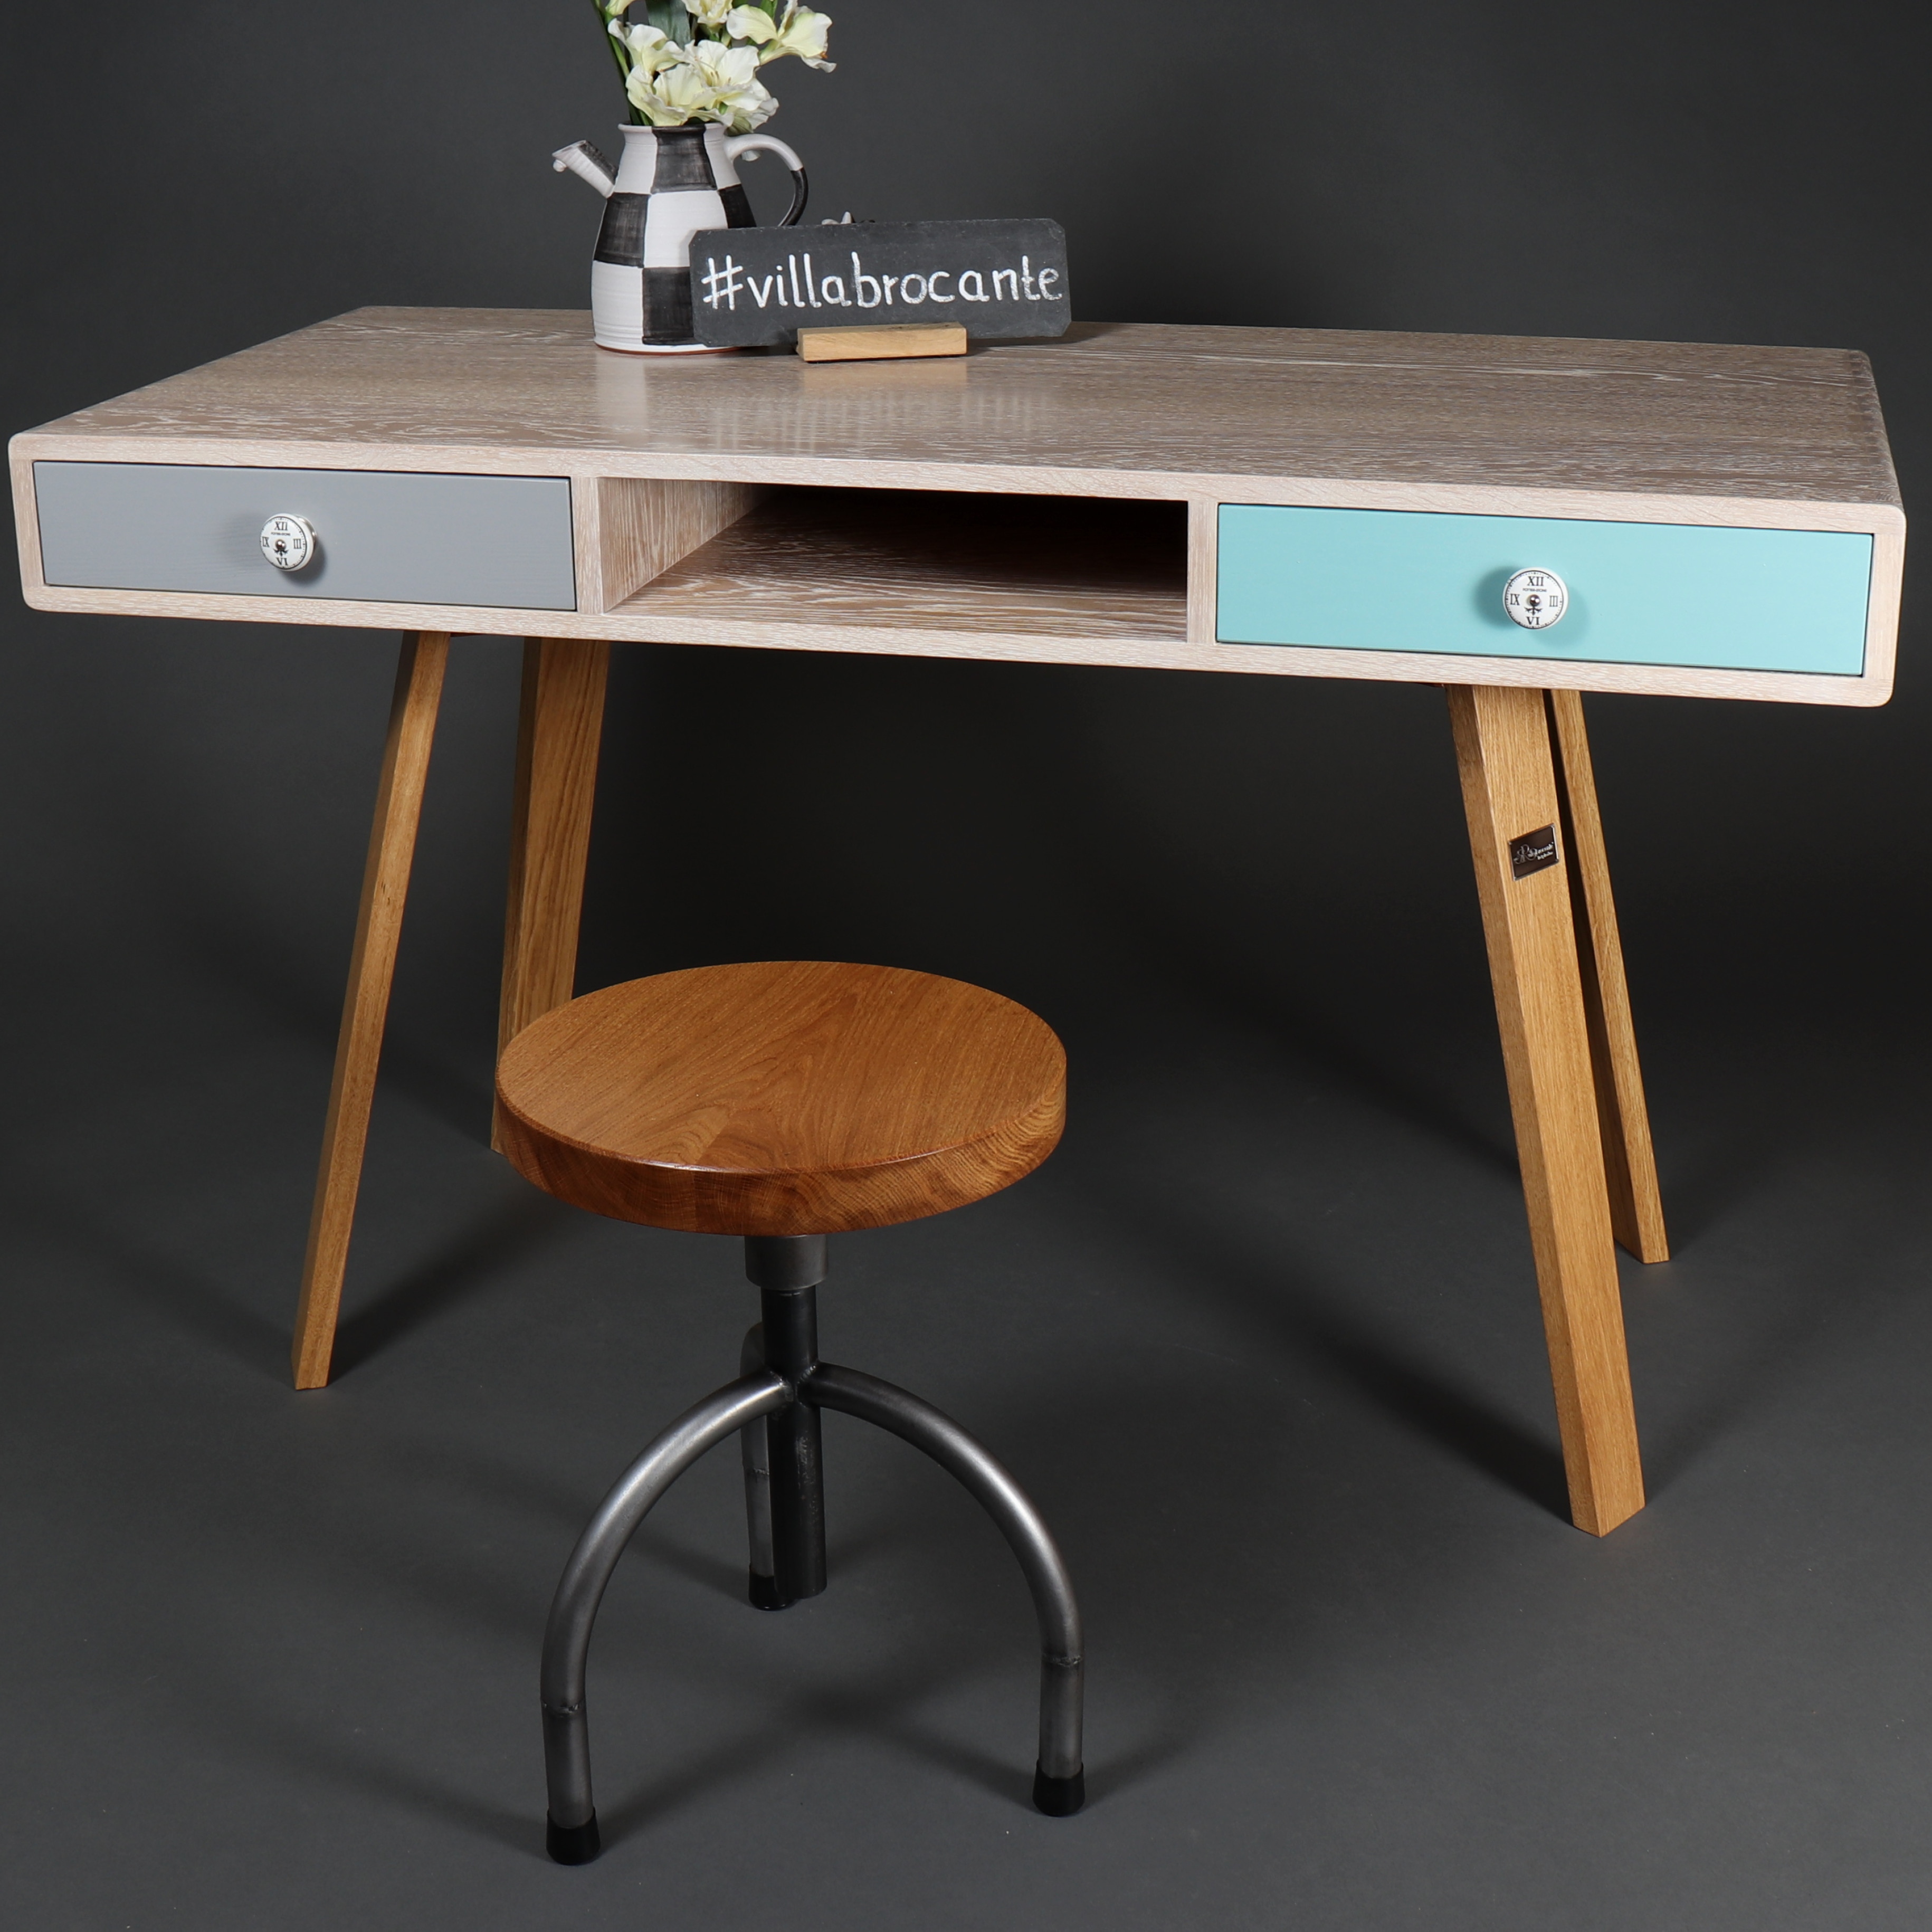 Schreibtisch Eichenholz massiv Stil Unikat retro weiß Hocker Möbel